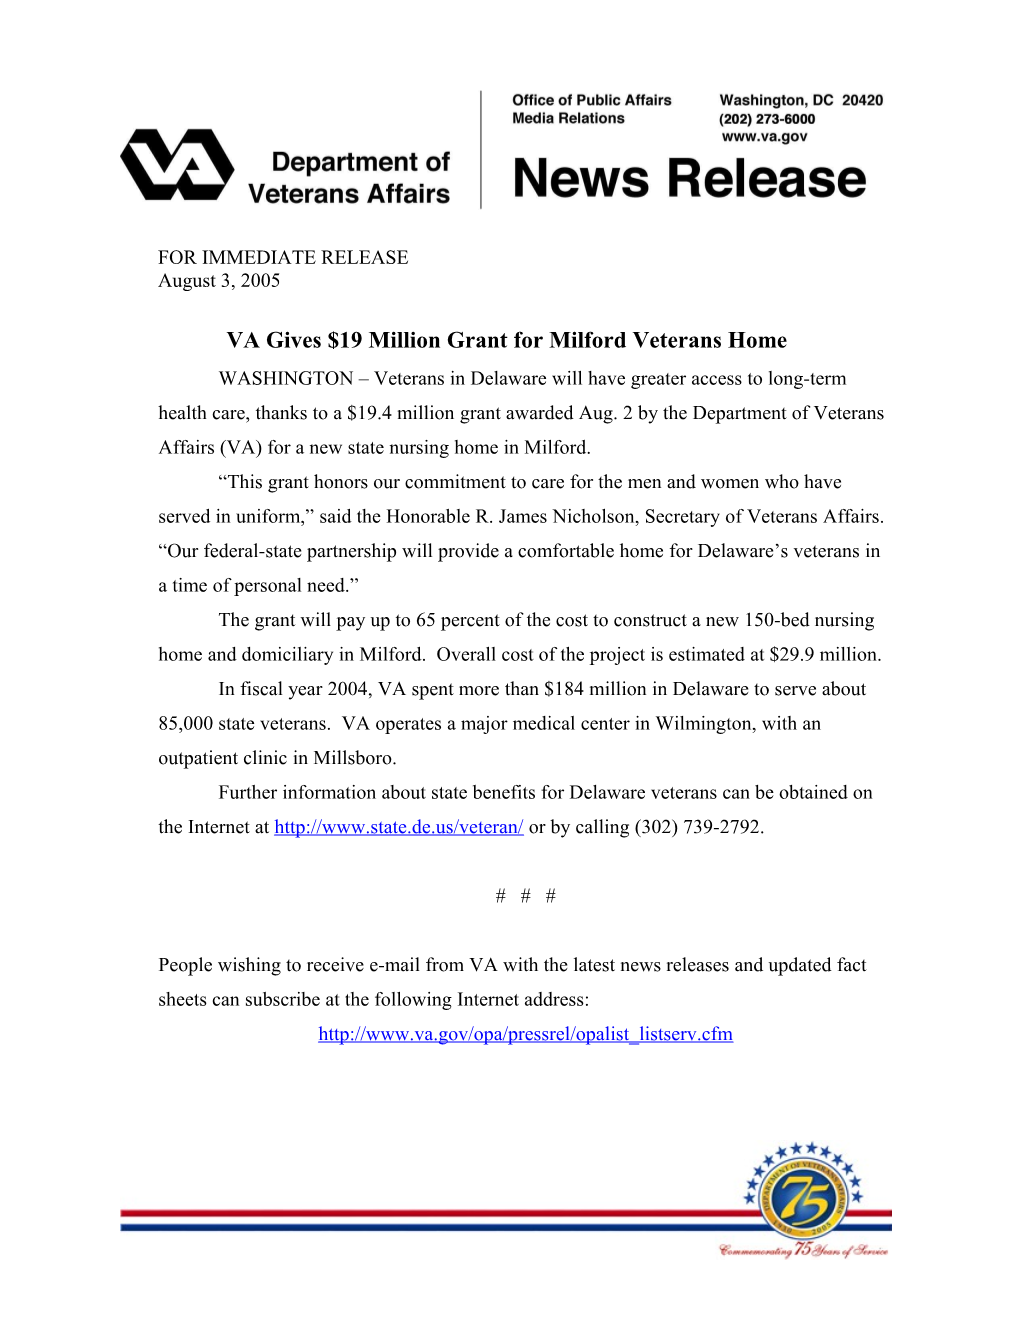 VA Gives $19 Million Grant for Milford Veterans Home